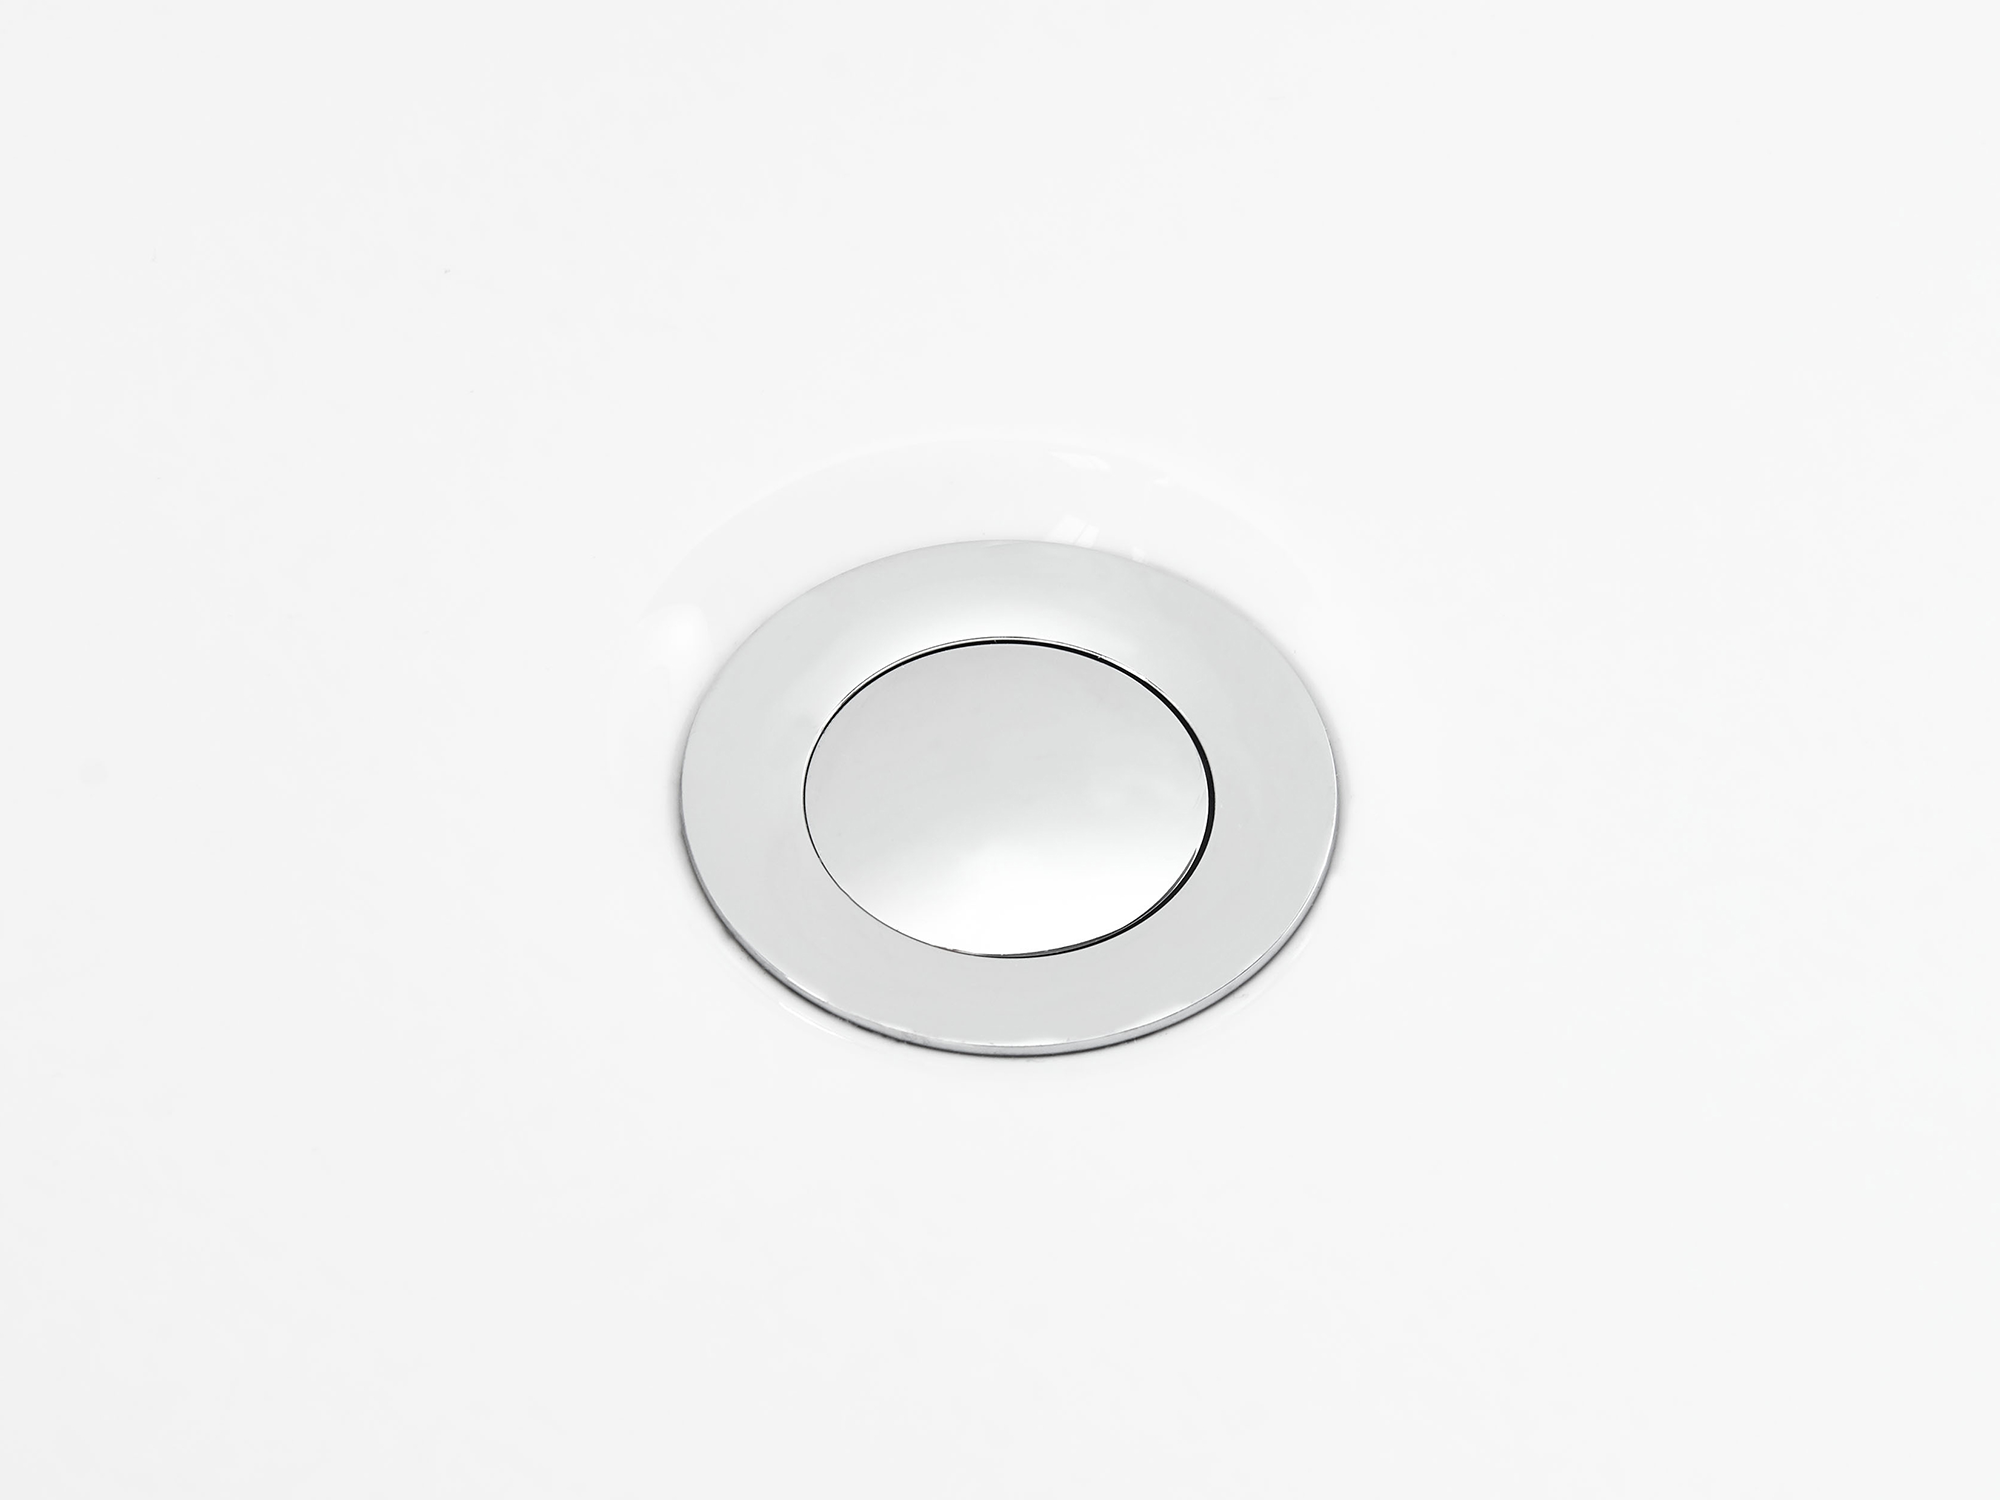 Badewanne freistehend weiß oval 170 x 80 cm CARRERA_809021